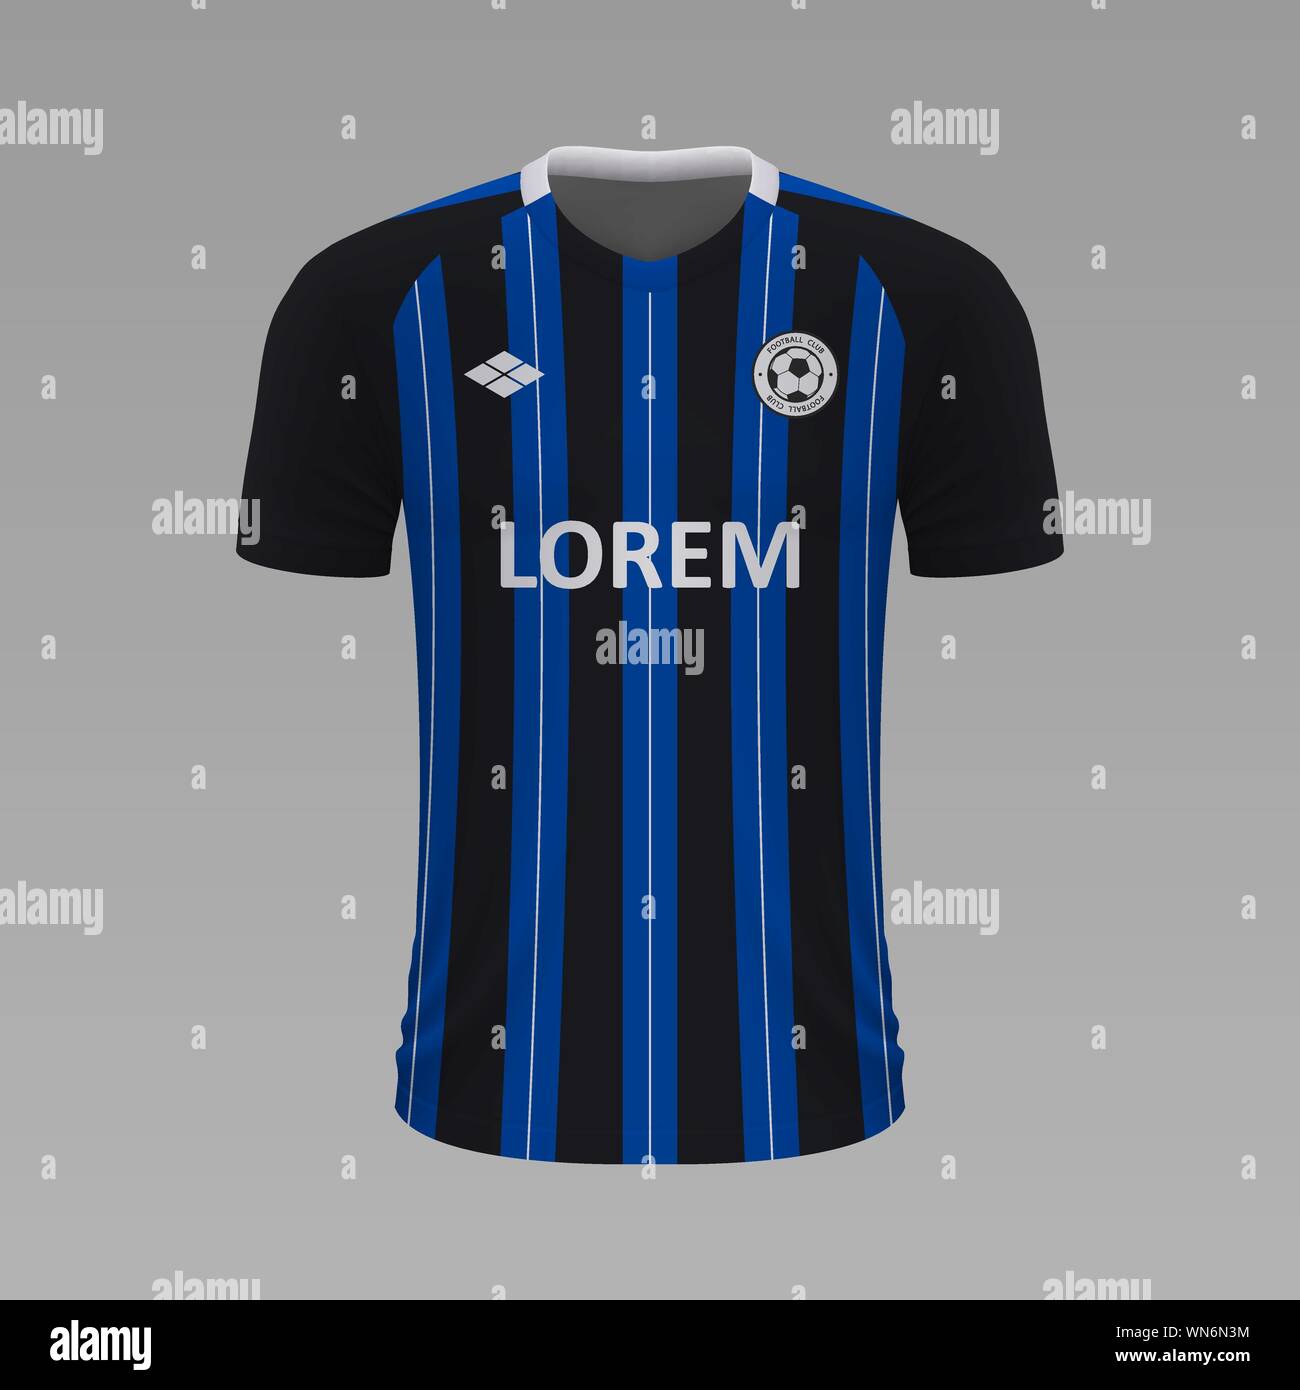 Soccer shirt réaliste Queretaro 2020, jersey modèle pour kit de football Illustration de Vecteur